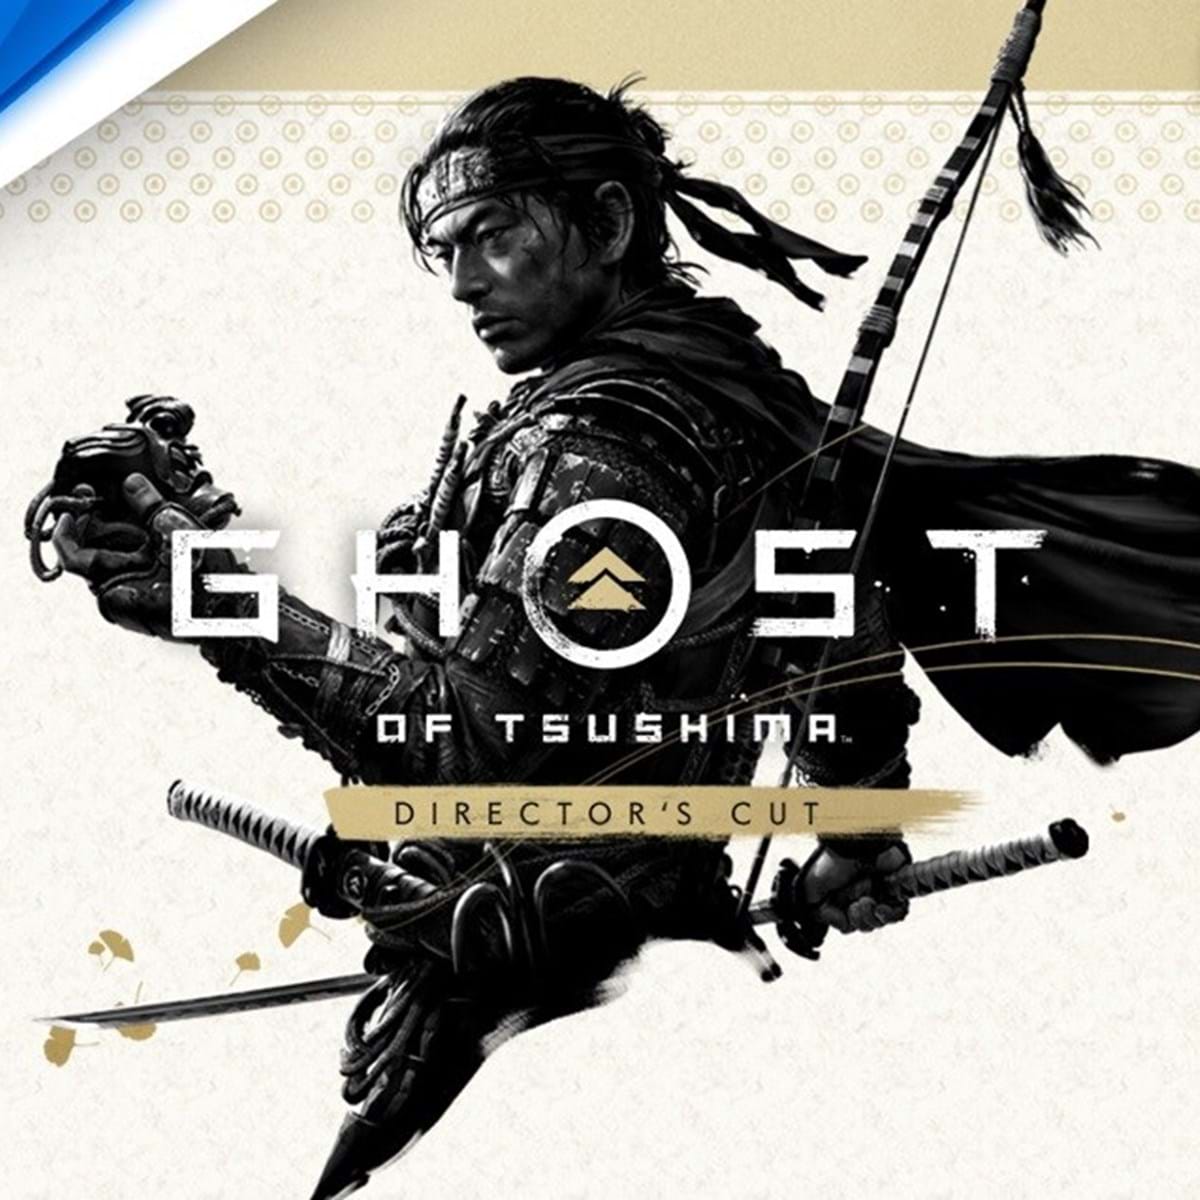 Evento de lançamento de Ghost of Tsushima em direto - Record